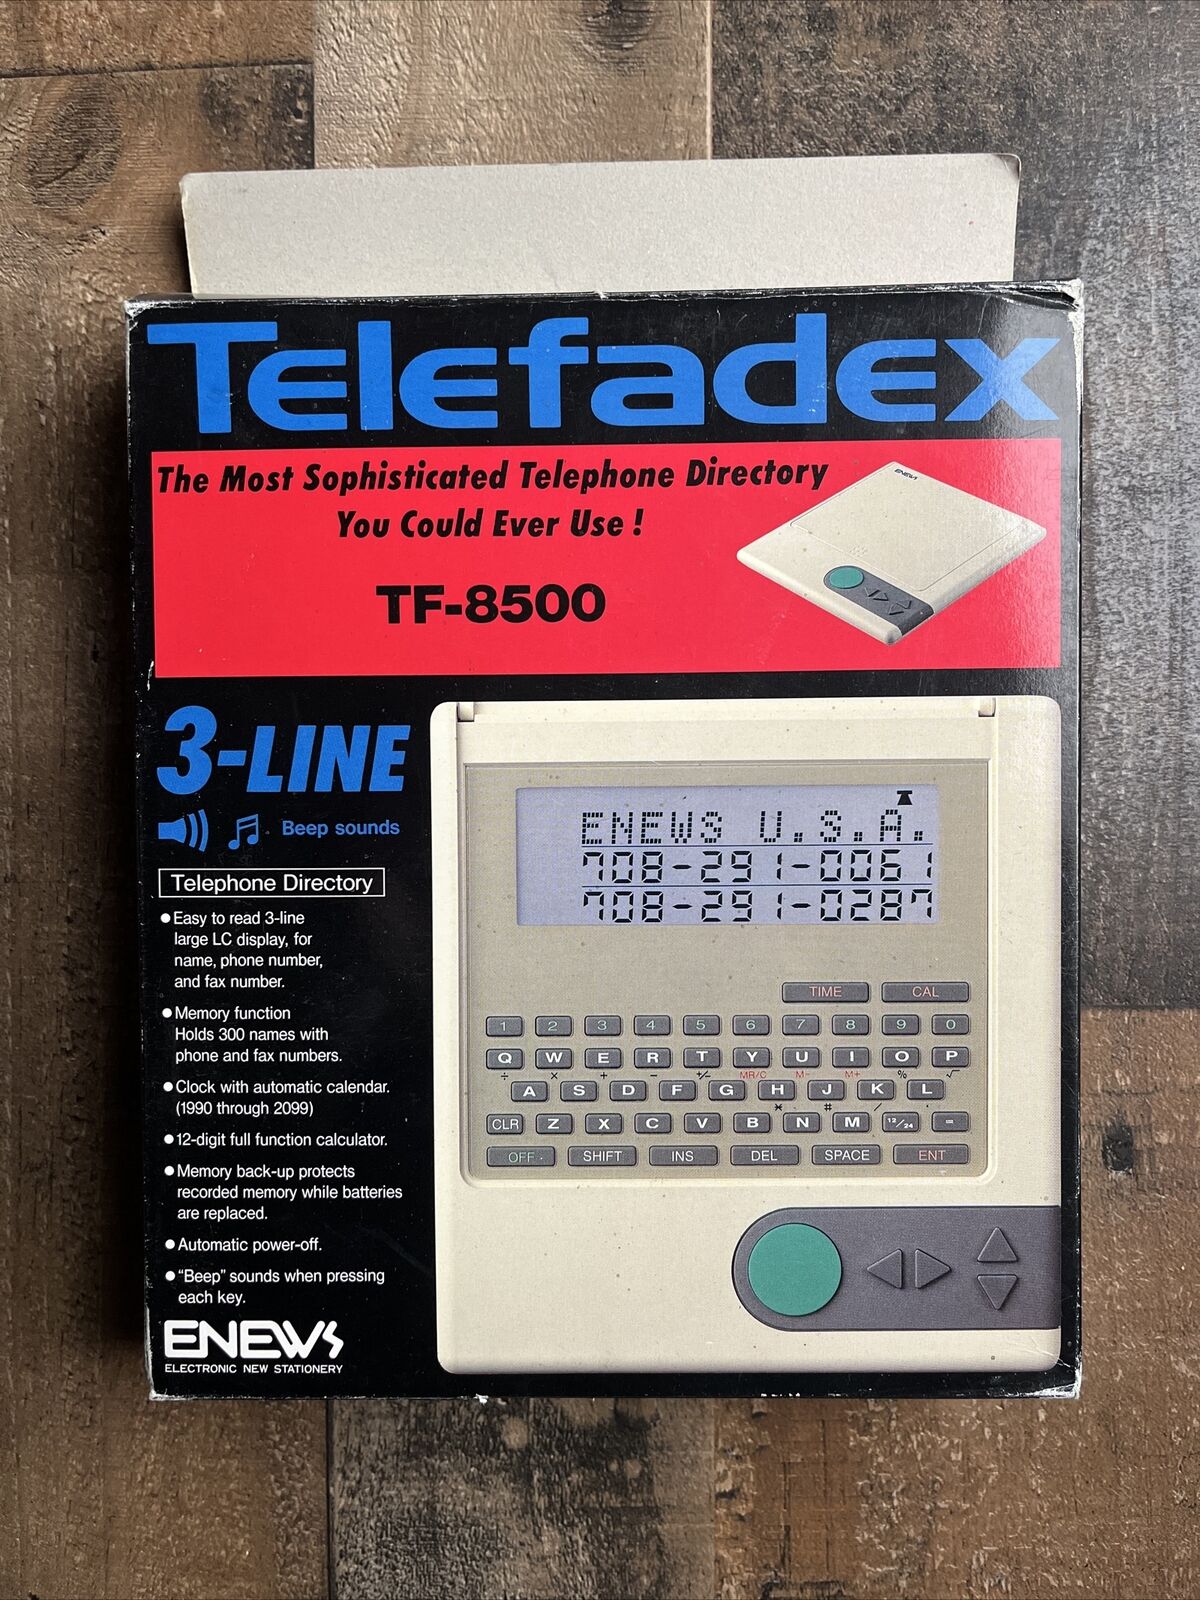 VtG NOS 90s Pilot TELEFADEX Discontinued Telephone Phone Directory TF-8500 *RARE